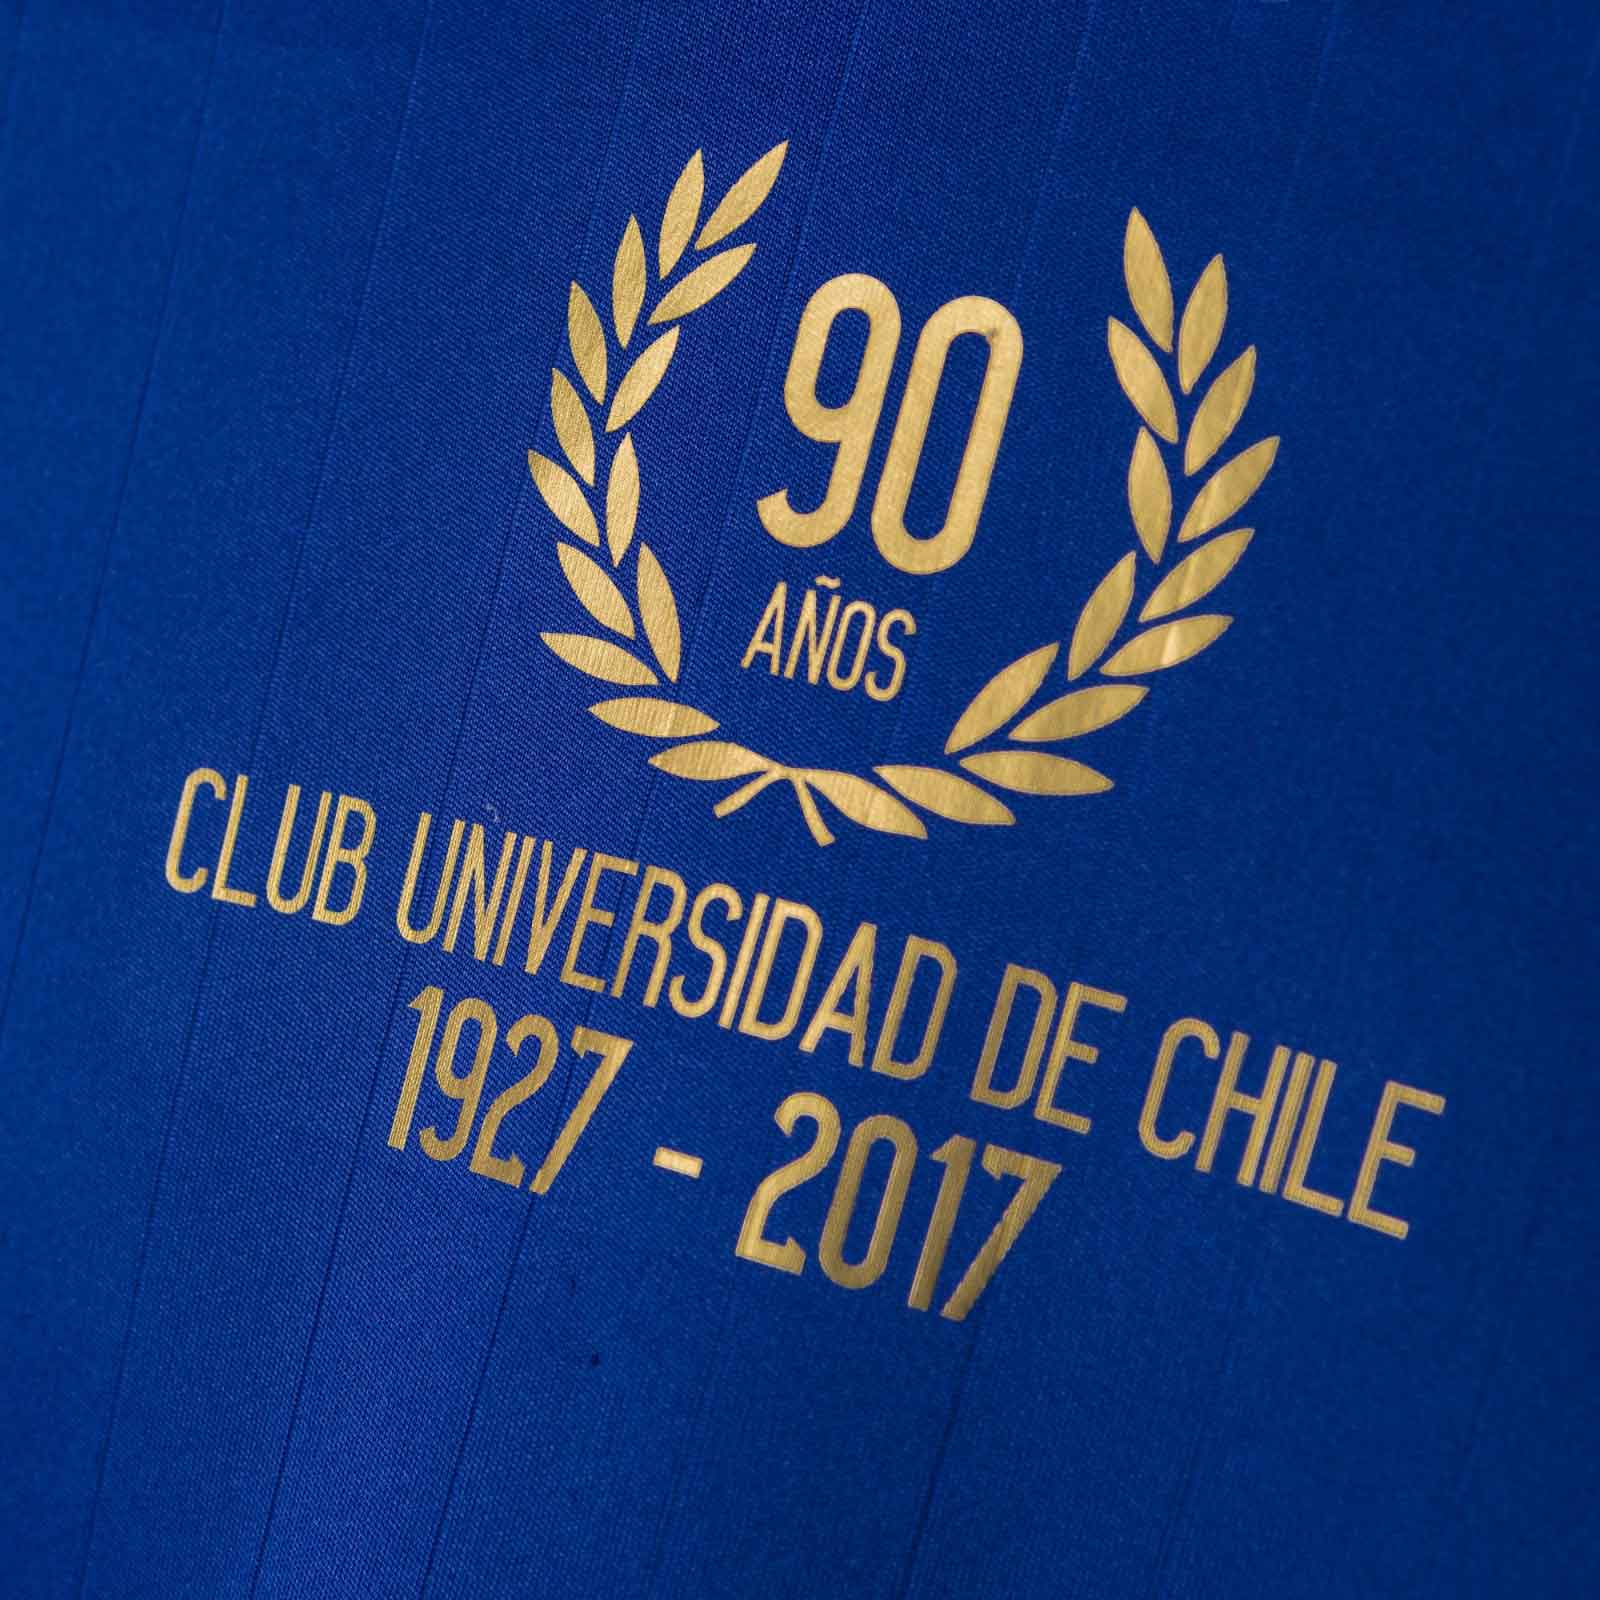 World Football Badges News: Chile - 2017 Campeonato Nacional de Transición